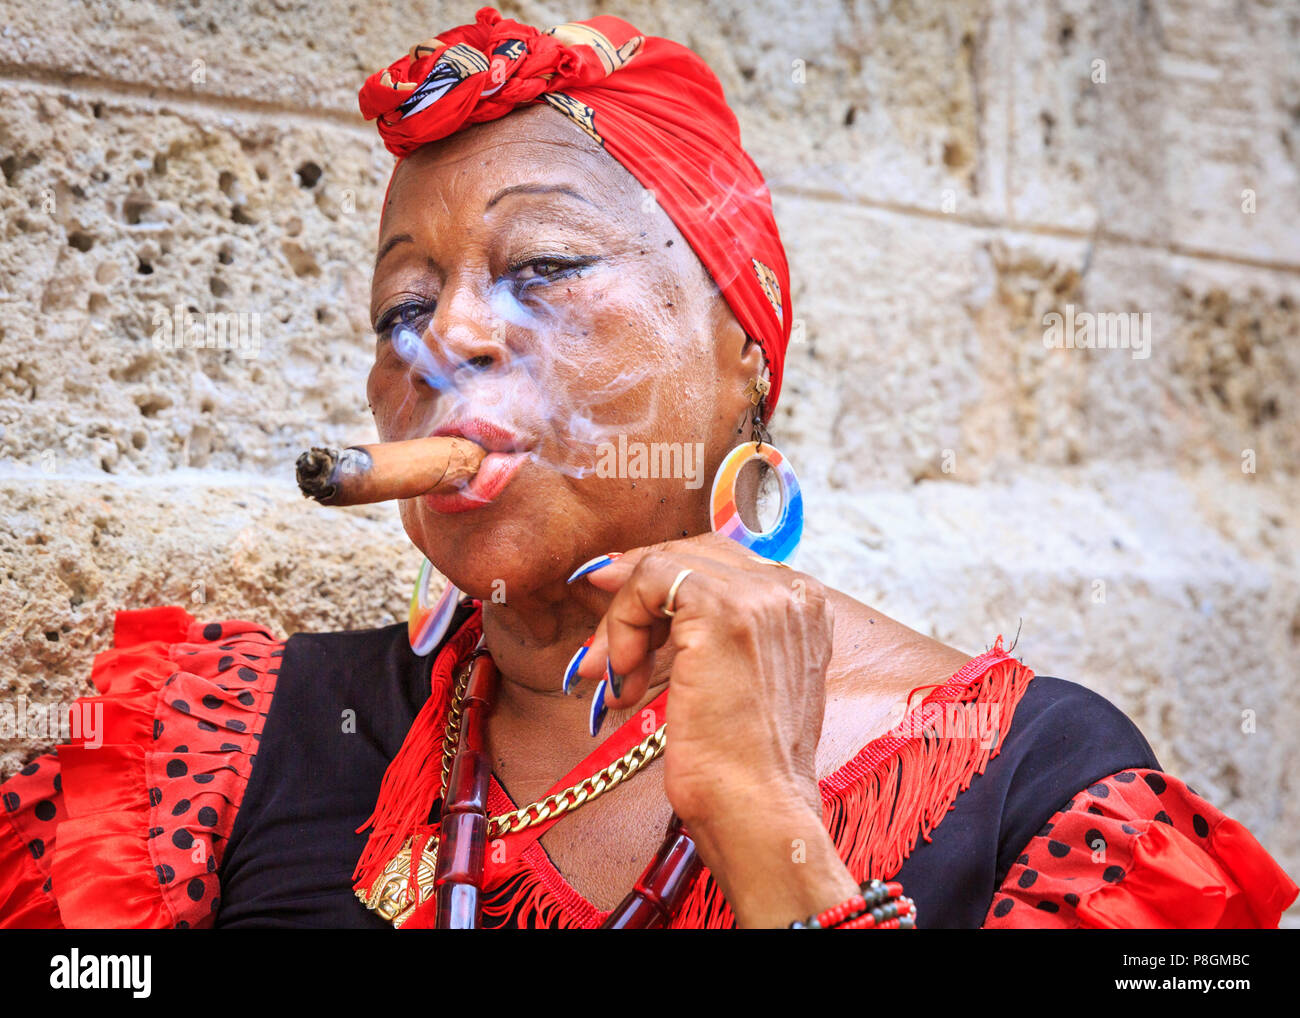 Kubanische Frau rauchen Zigarre, in traditioneller Kleidung, Blicke auf Kamera, Porträt, Havanna, Kuba Stockfoto